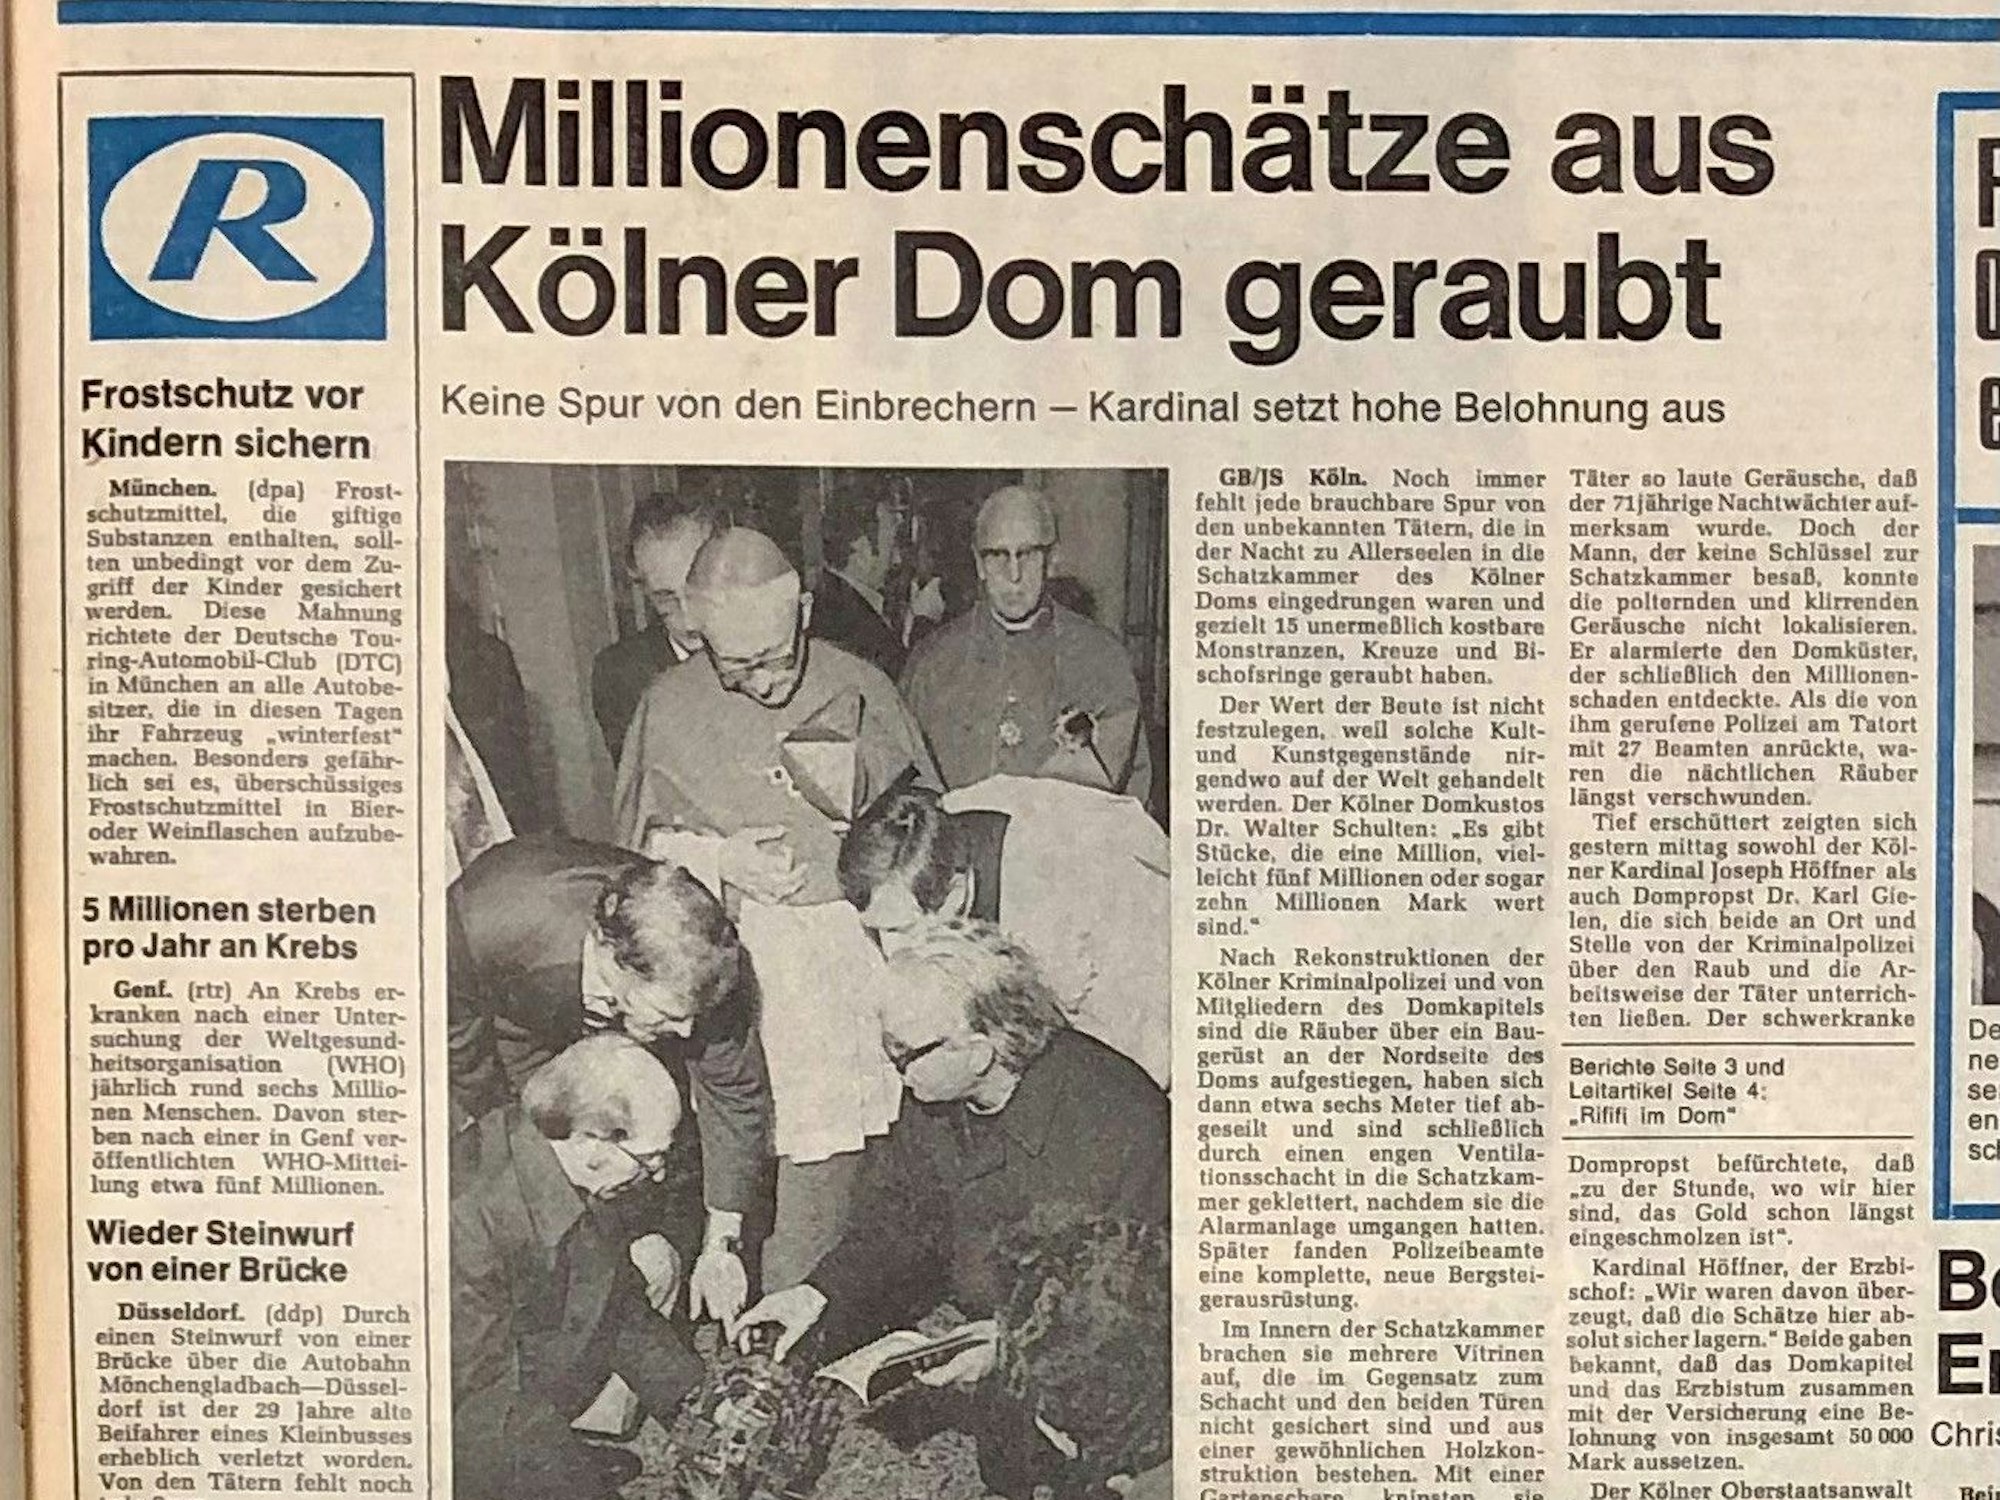 Rundschau-Titelseite zum Domschatzraub vom 3. November 1975